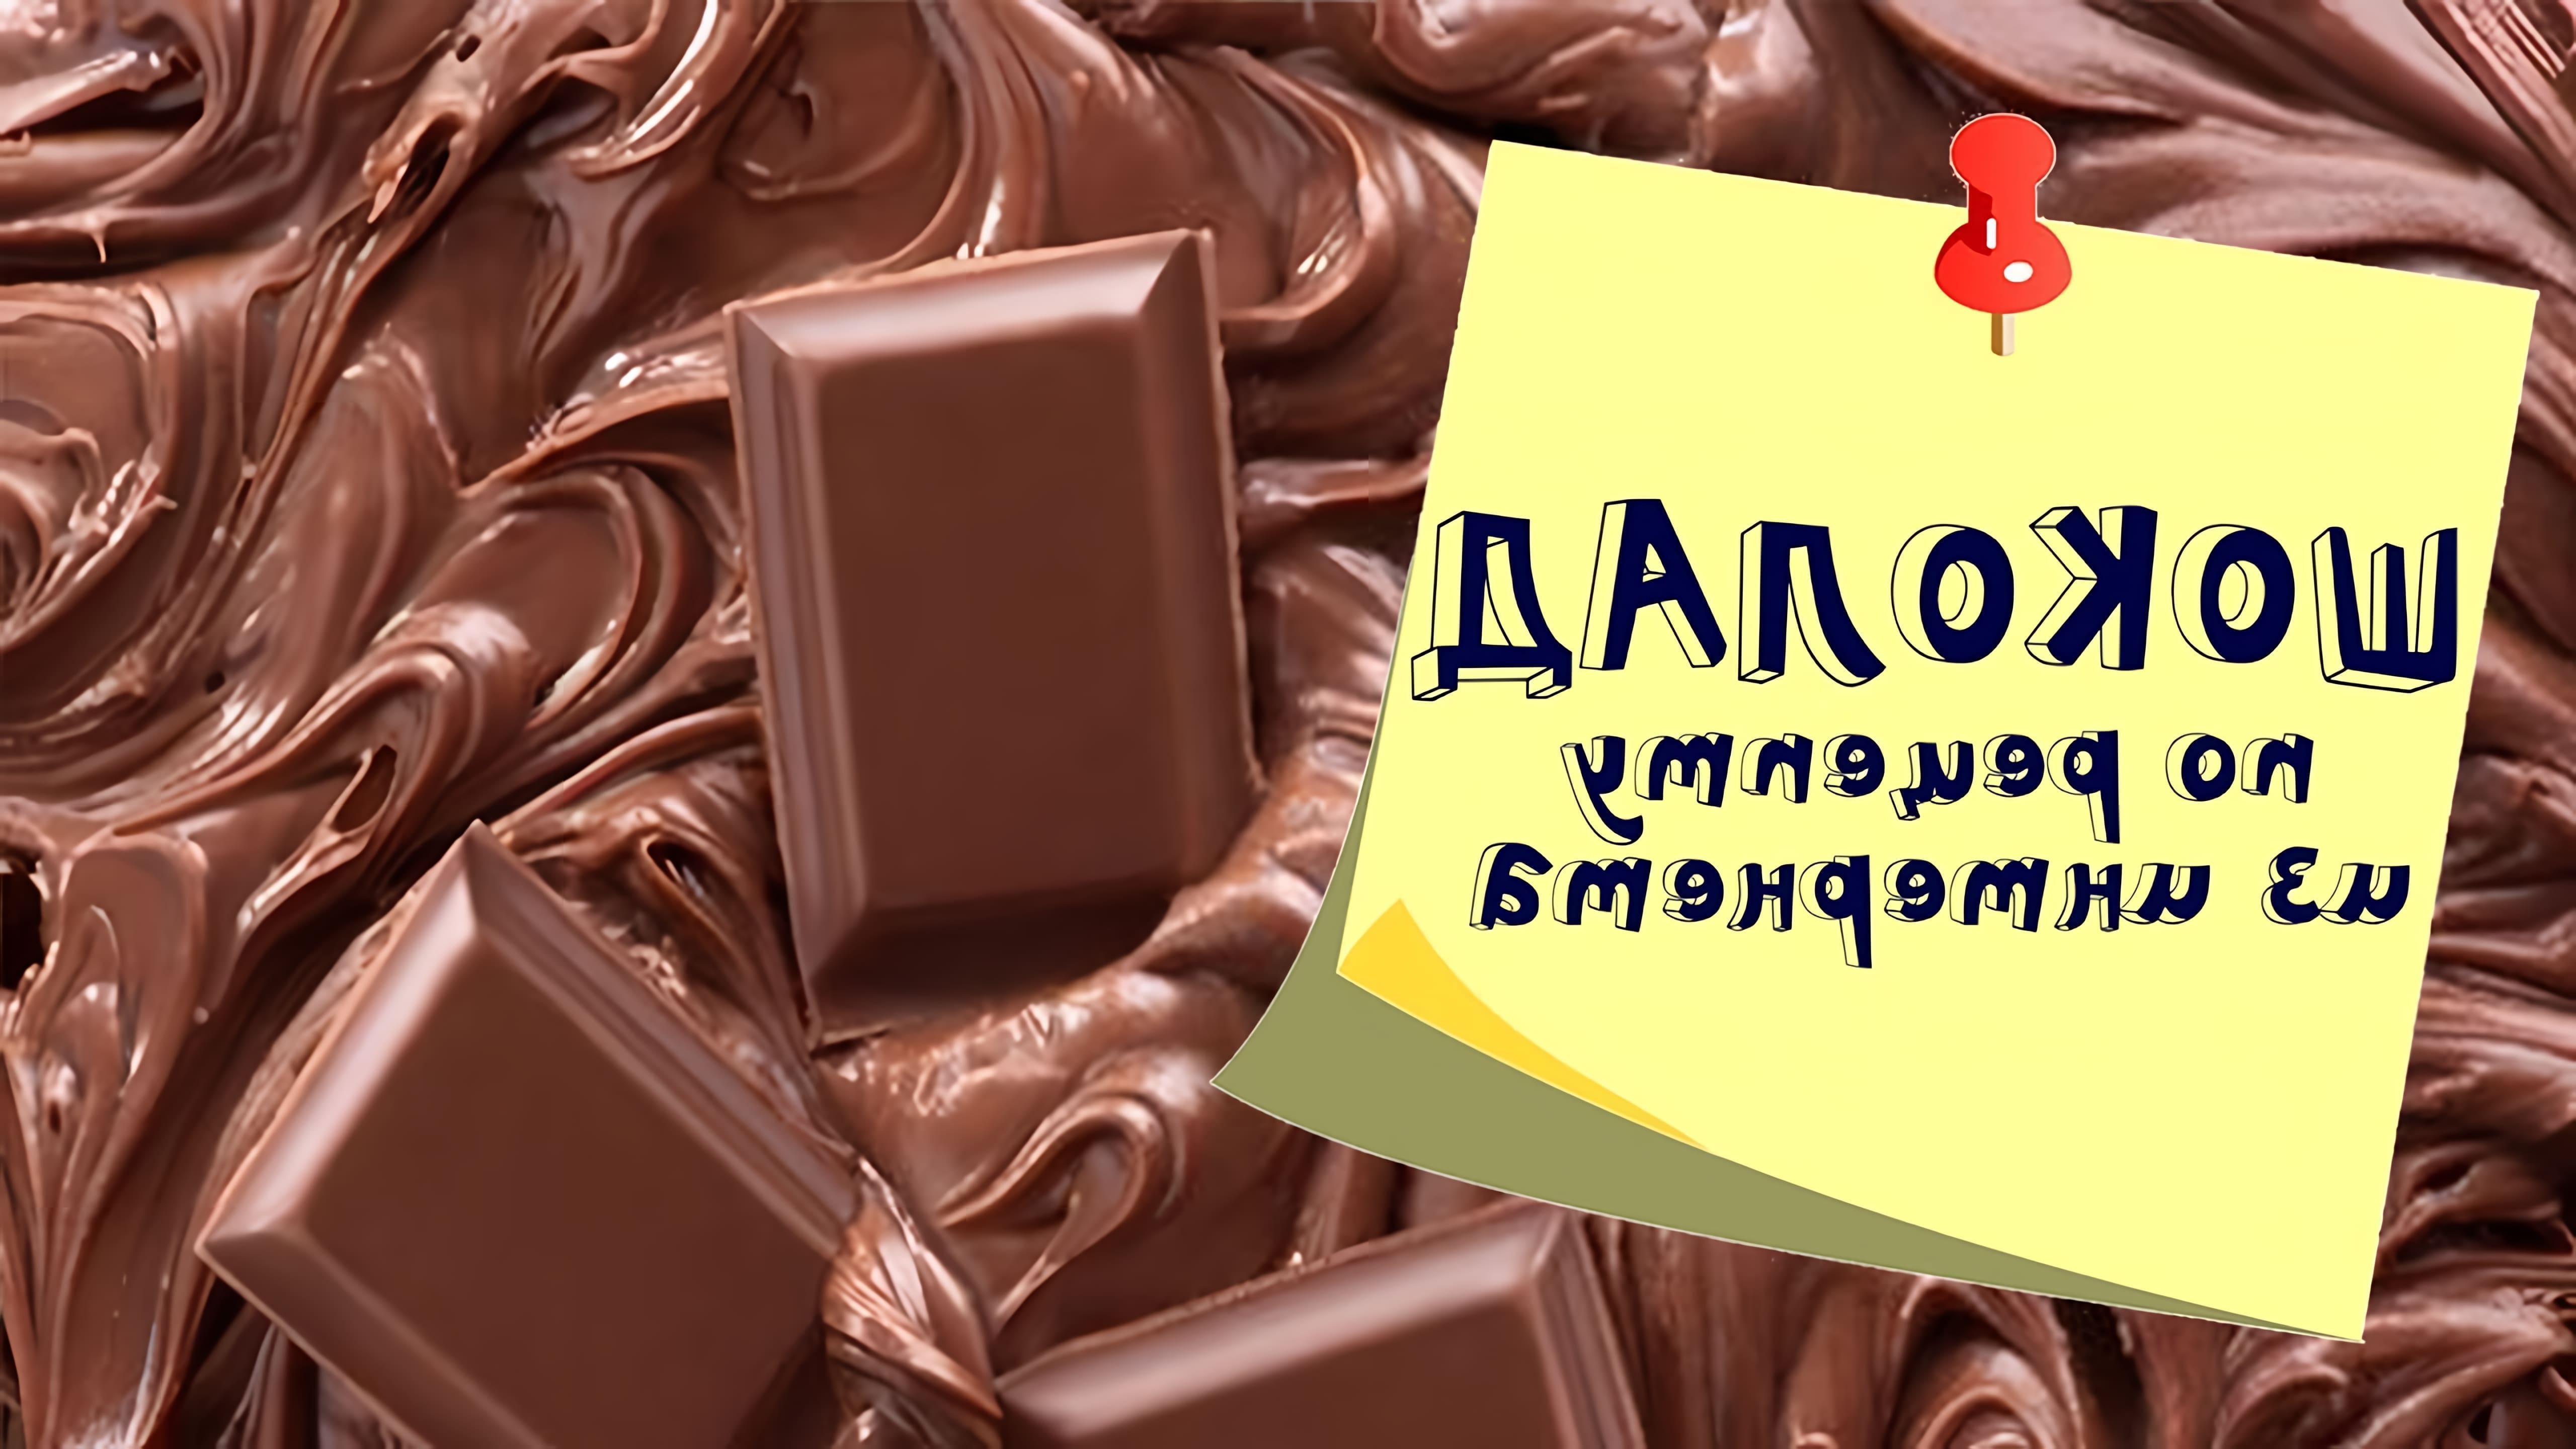 В этом видео Светлана готовит шоколад в домашних условиях